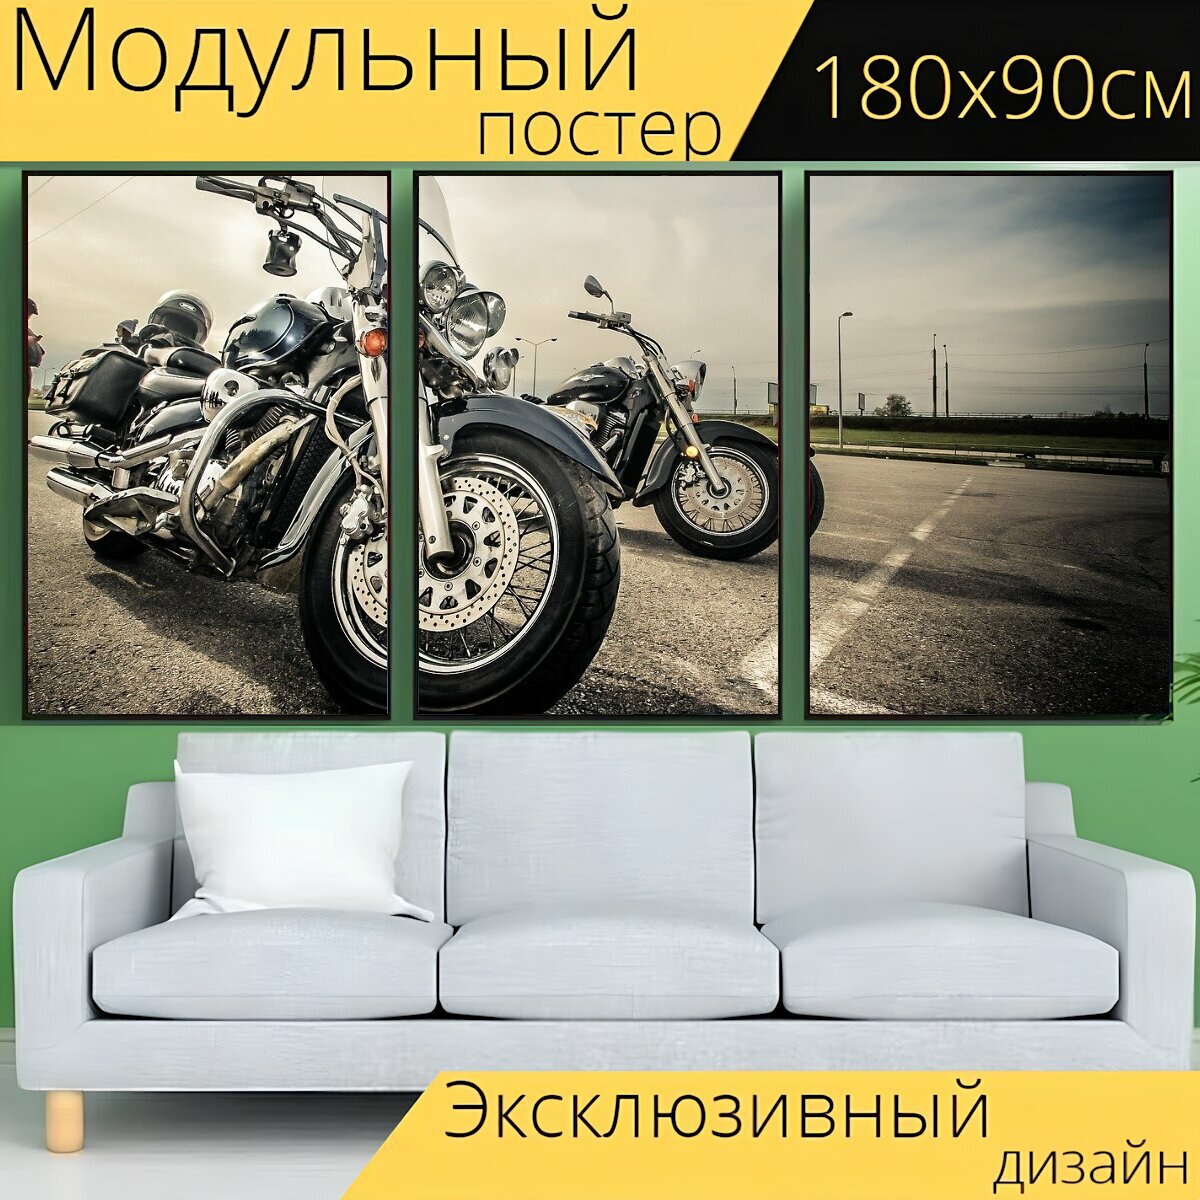 Модульный постер "Мотоцикл, байк, мото" 180 x 90 см. для интерьера